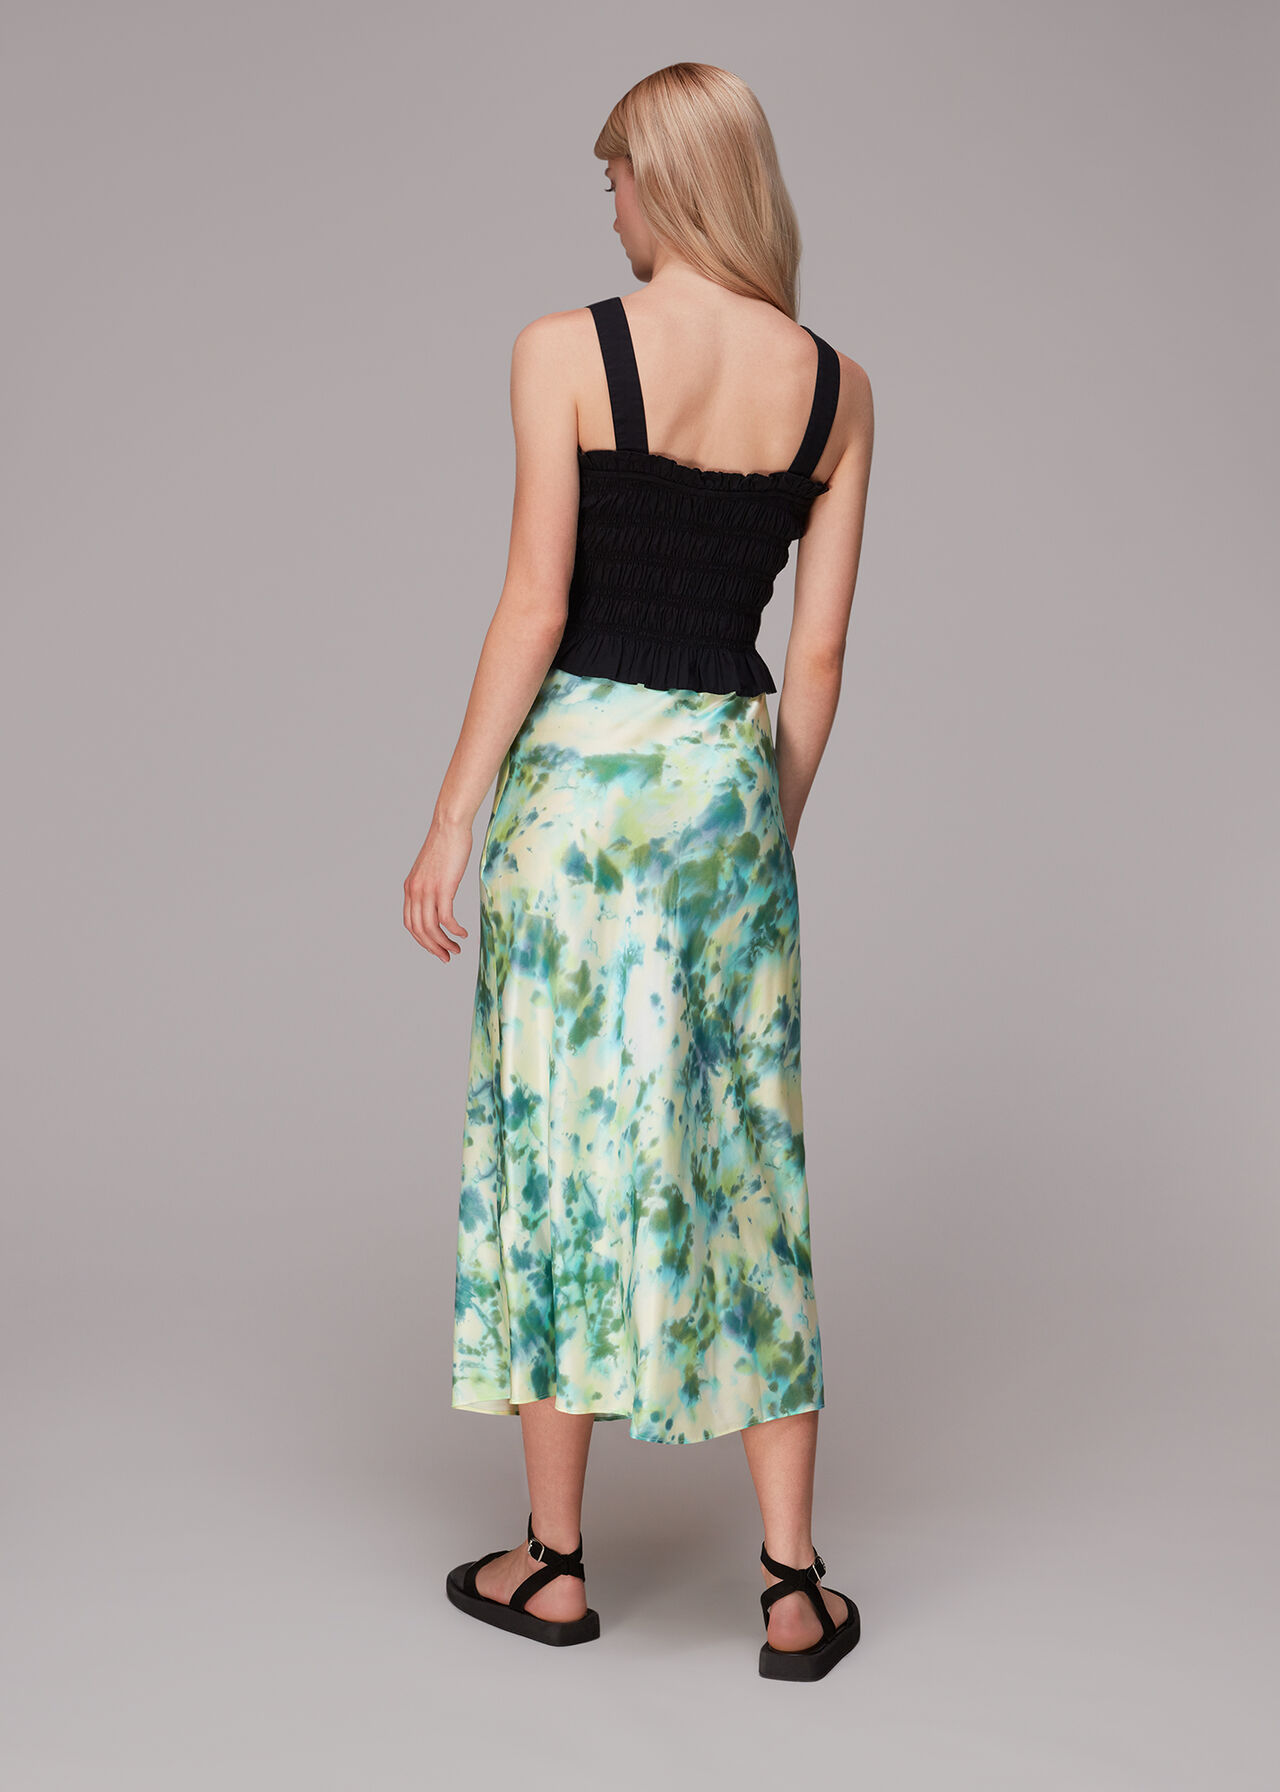 Waterflower Bias Cut Skirt